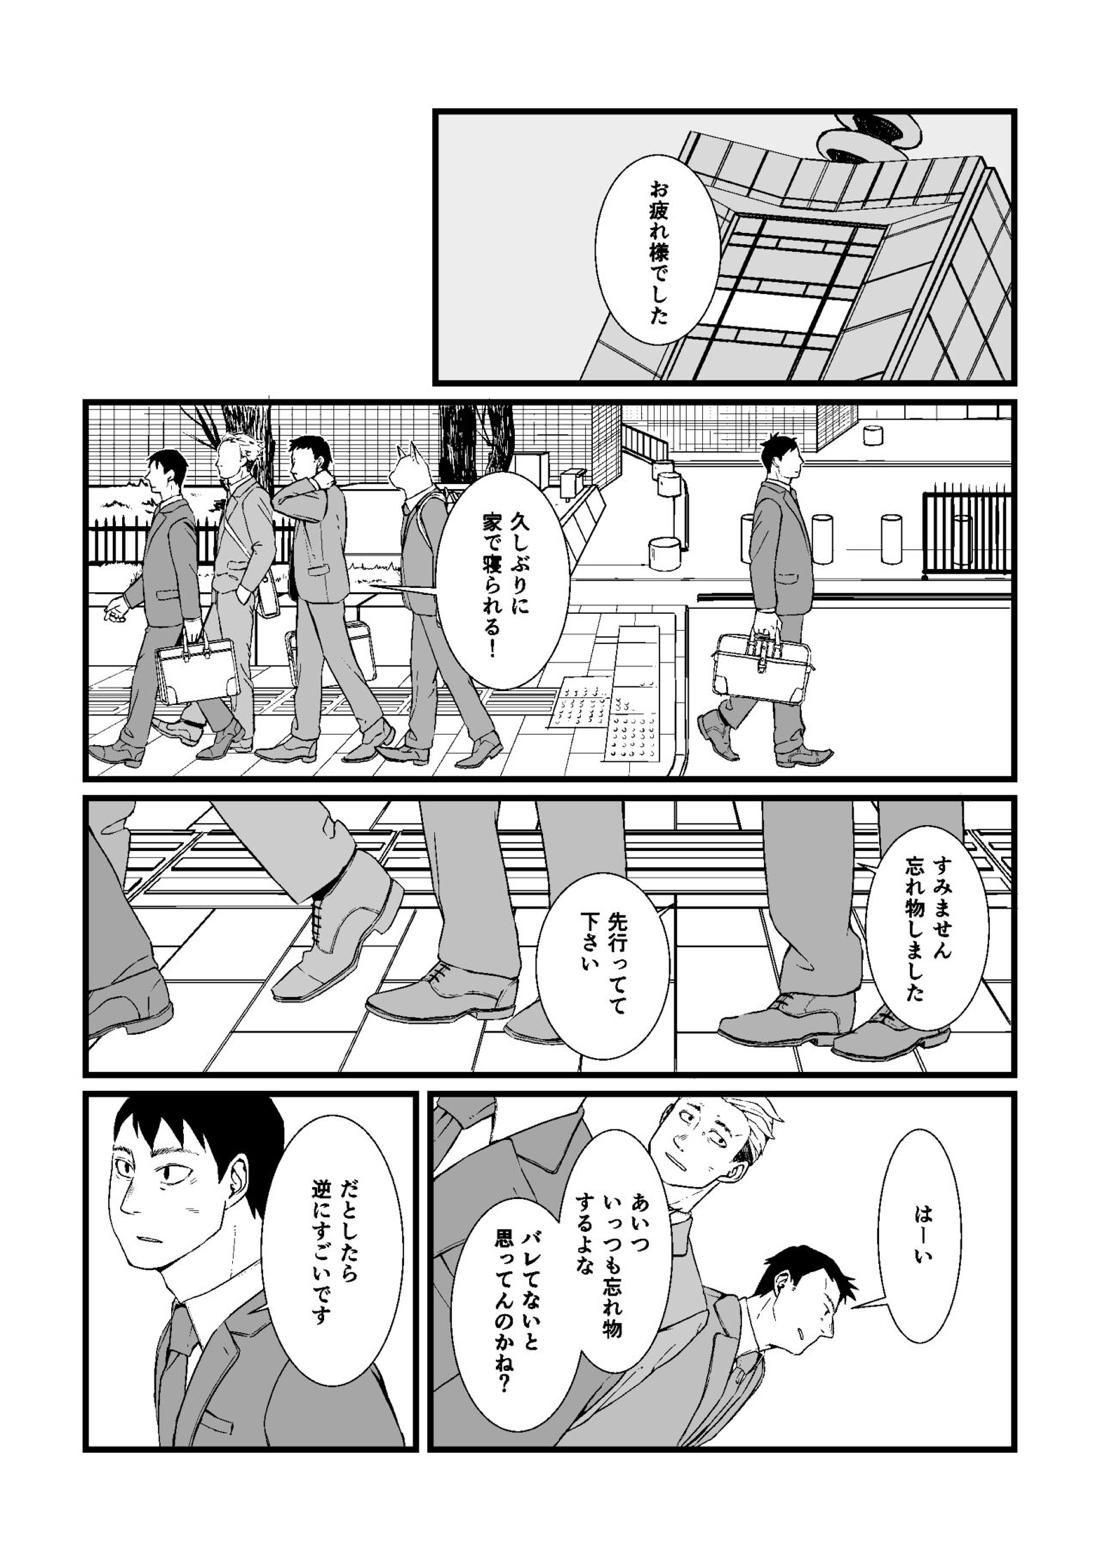 三茶x塚内 R18 漫画 2ページ